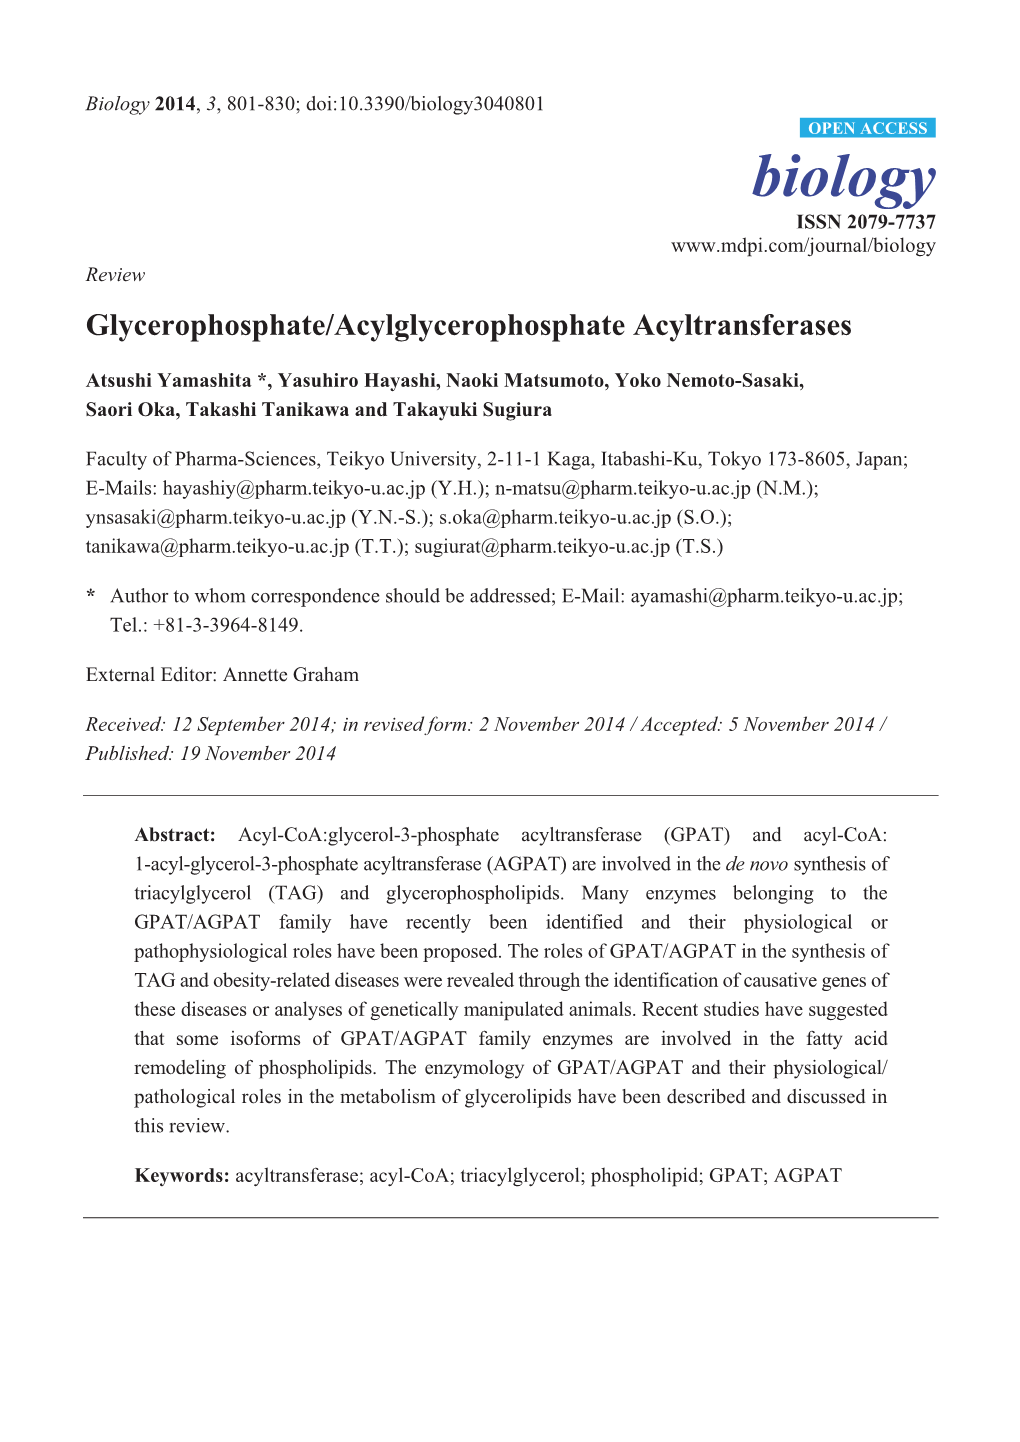 Glycerophosphate/Acylglycerophosphate Acyltransferases